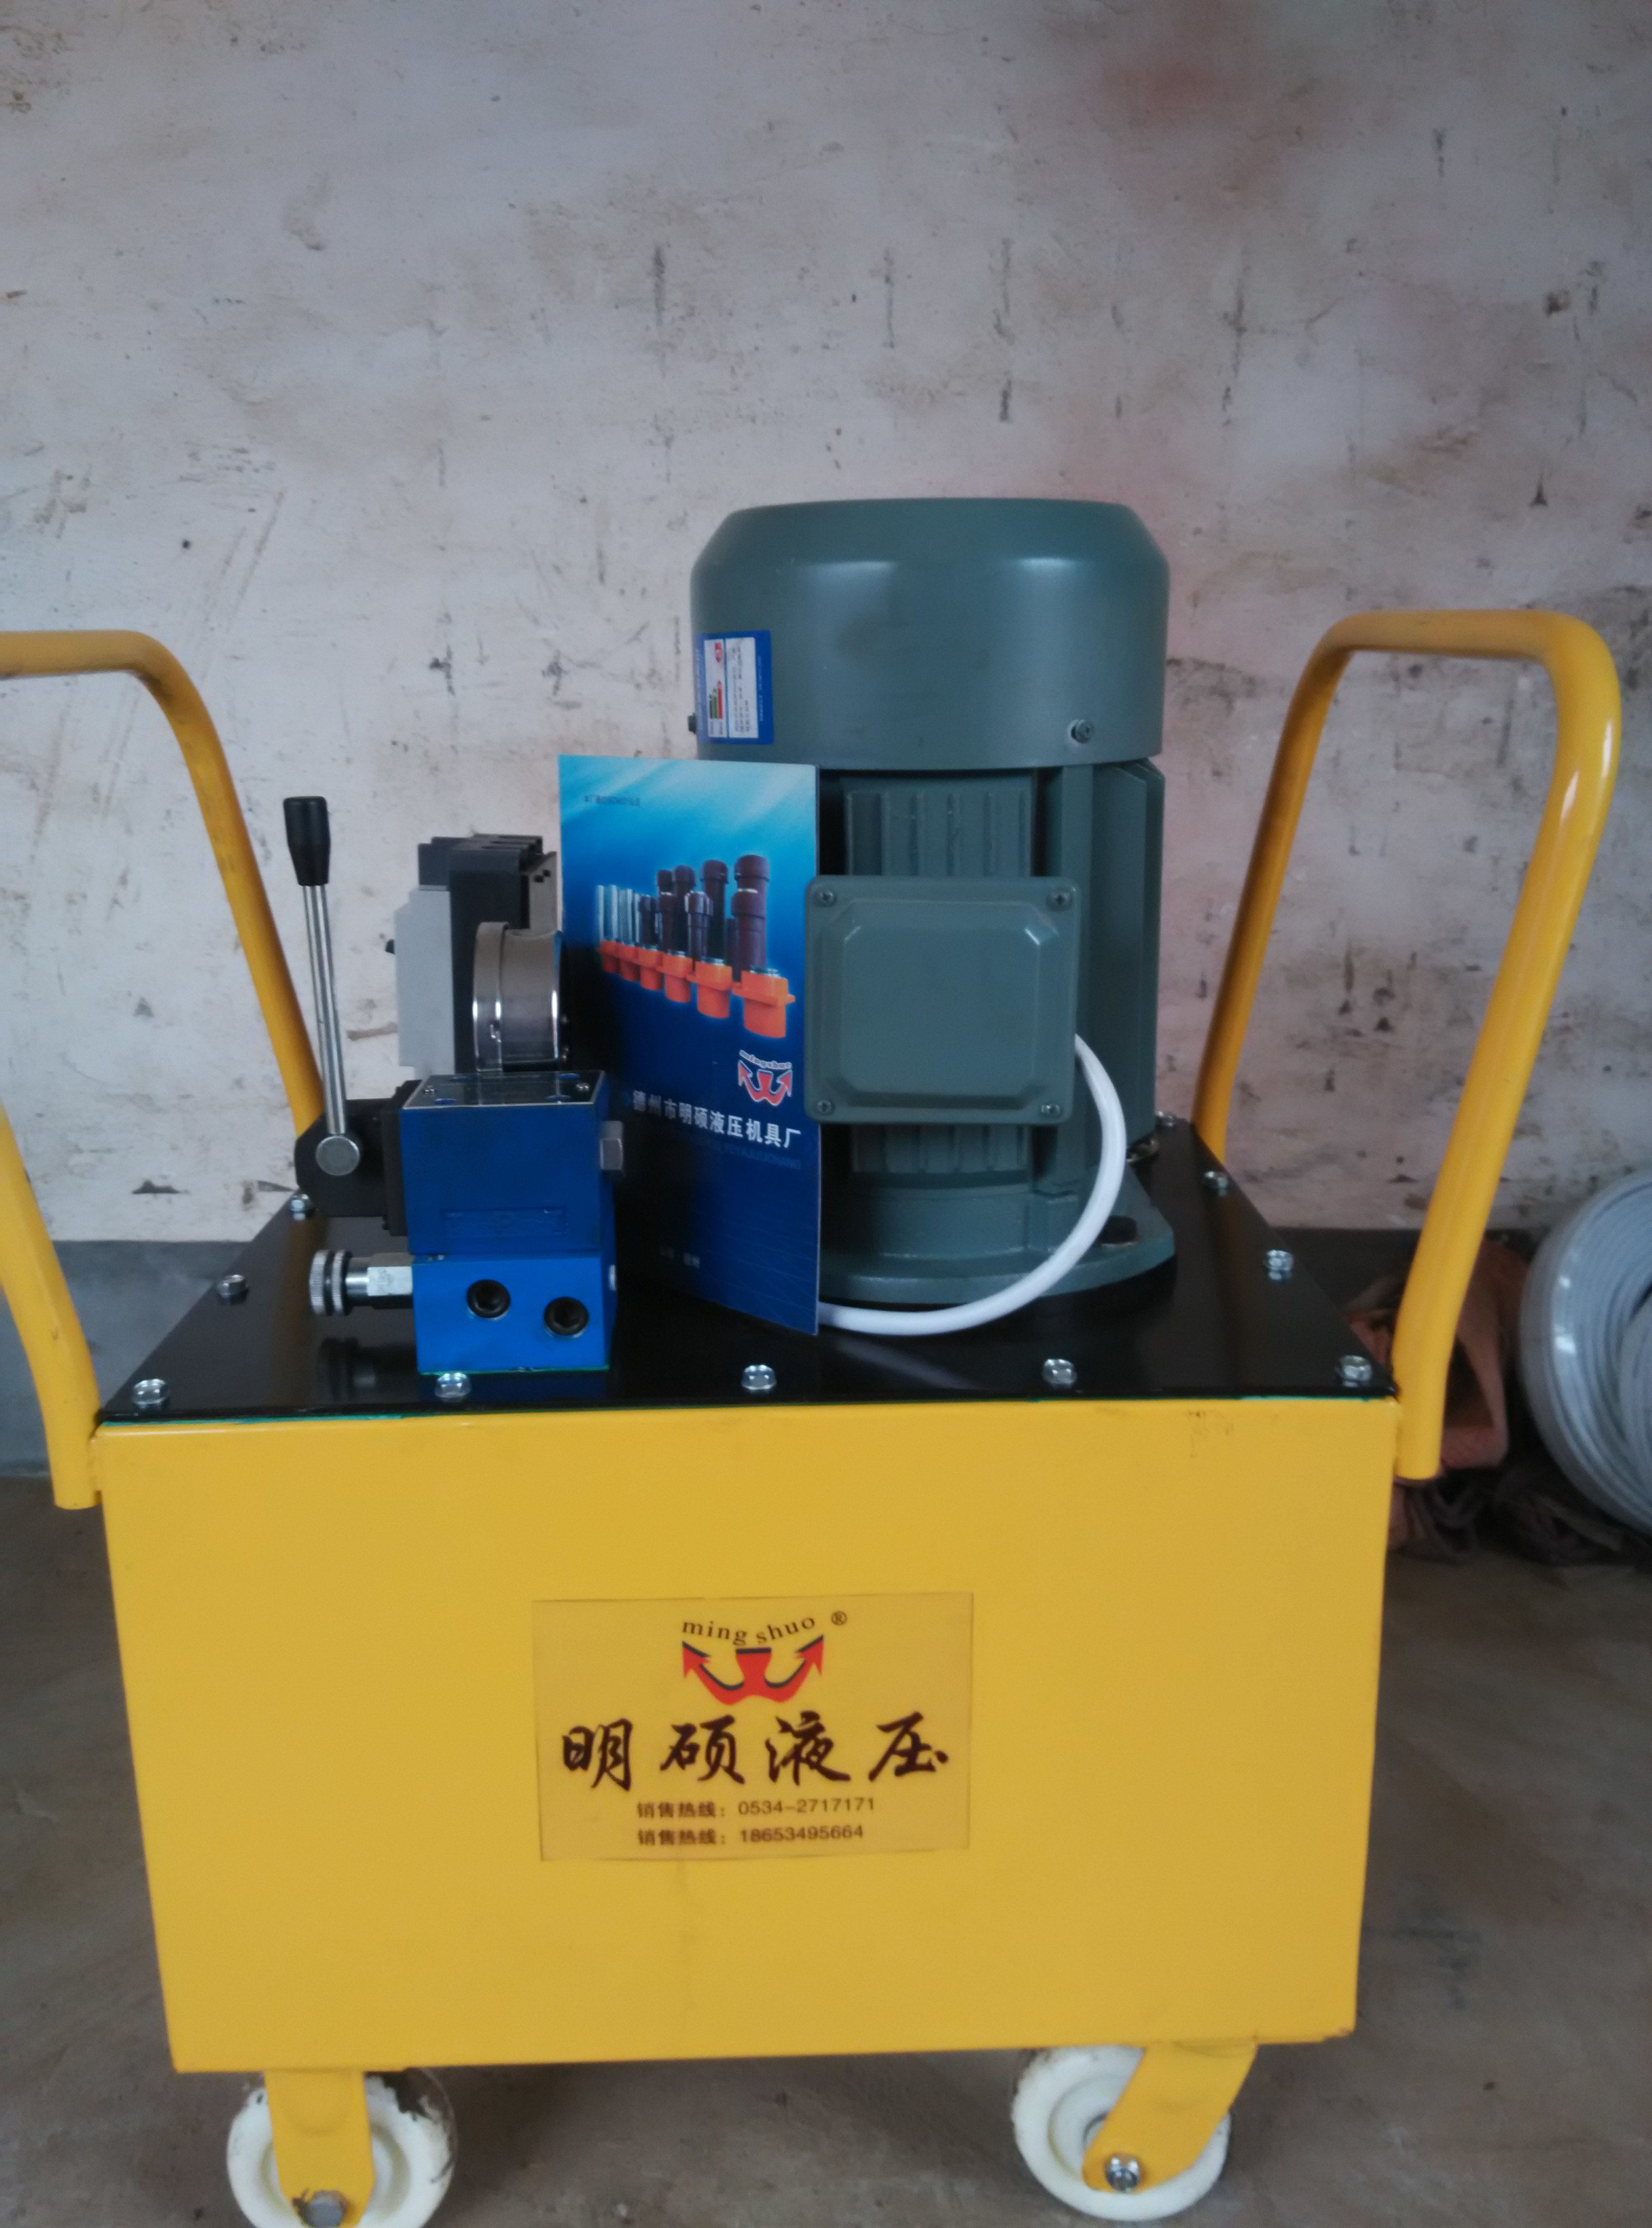 明硕液压机具厂定做多种型号液压泵电动油泵液压泵站液压系